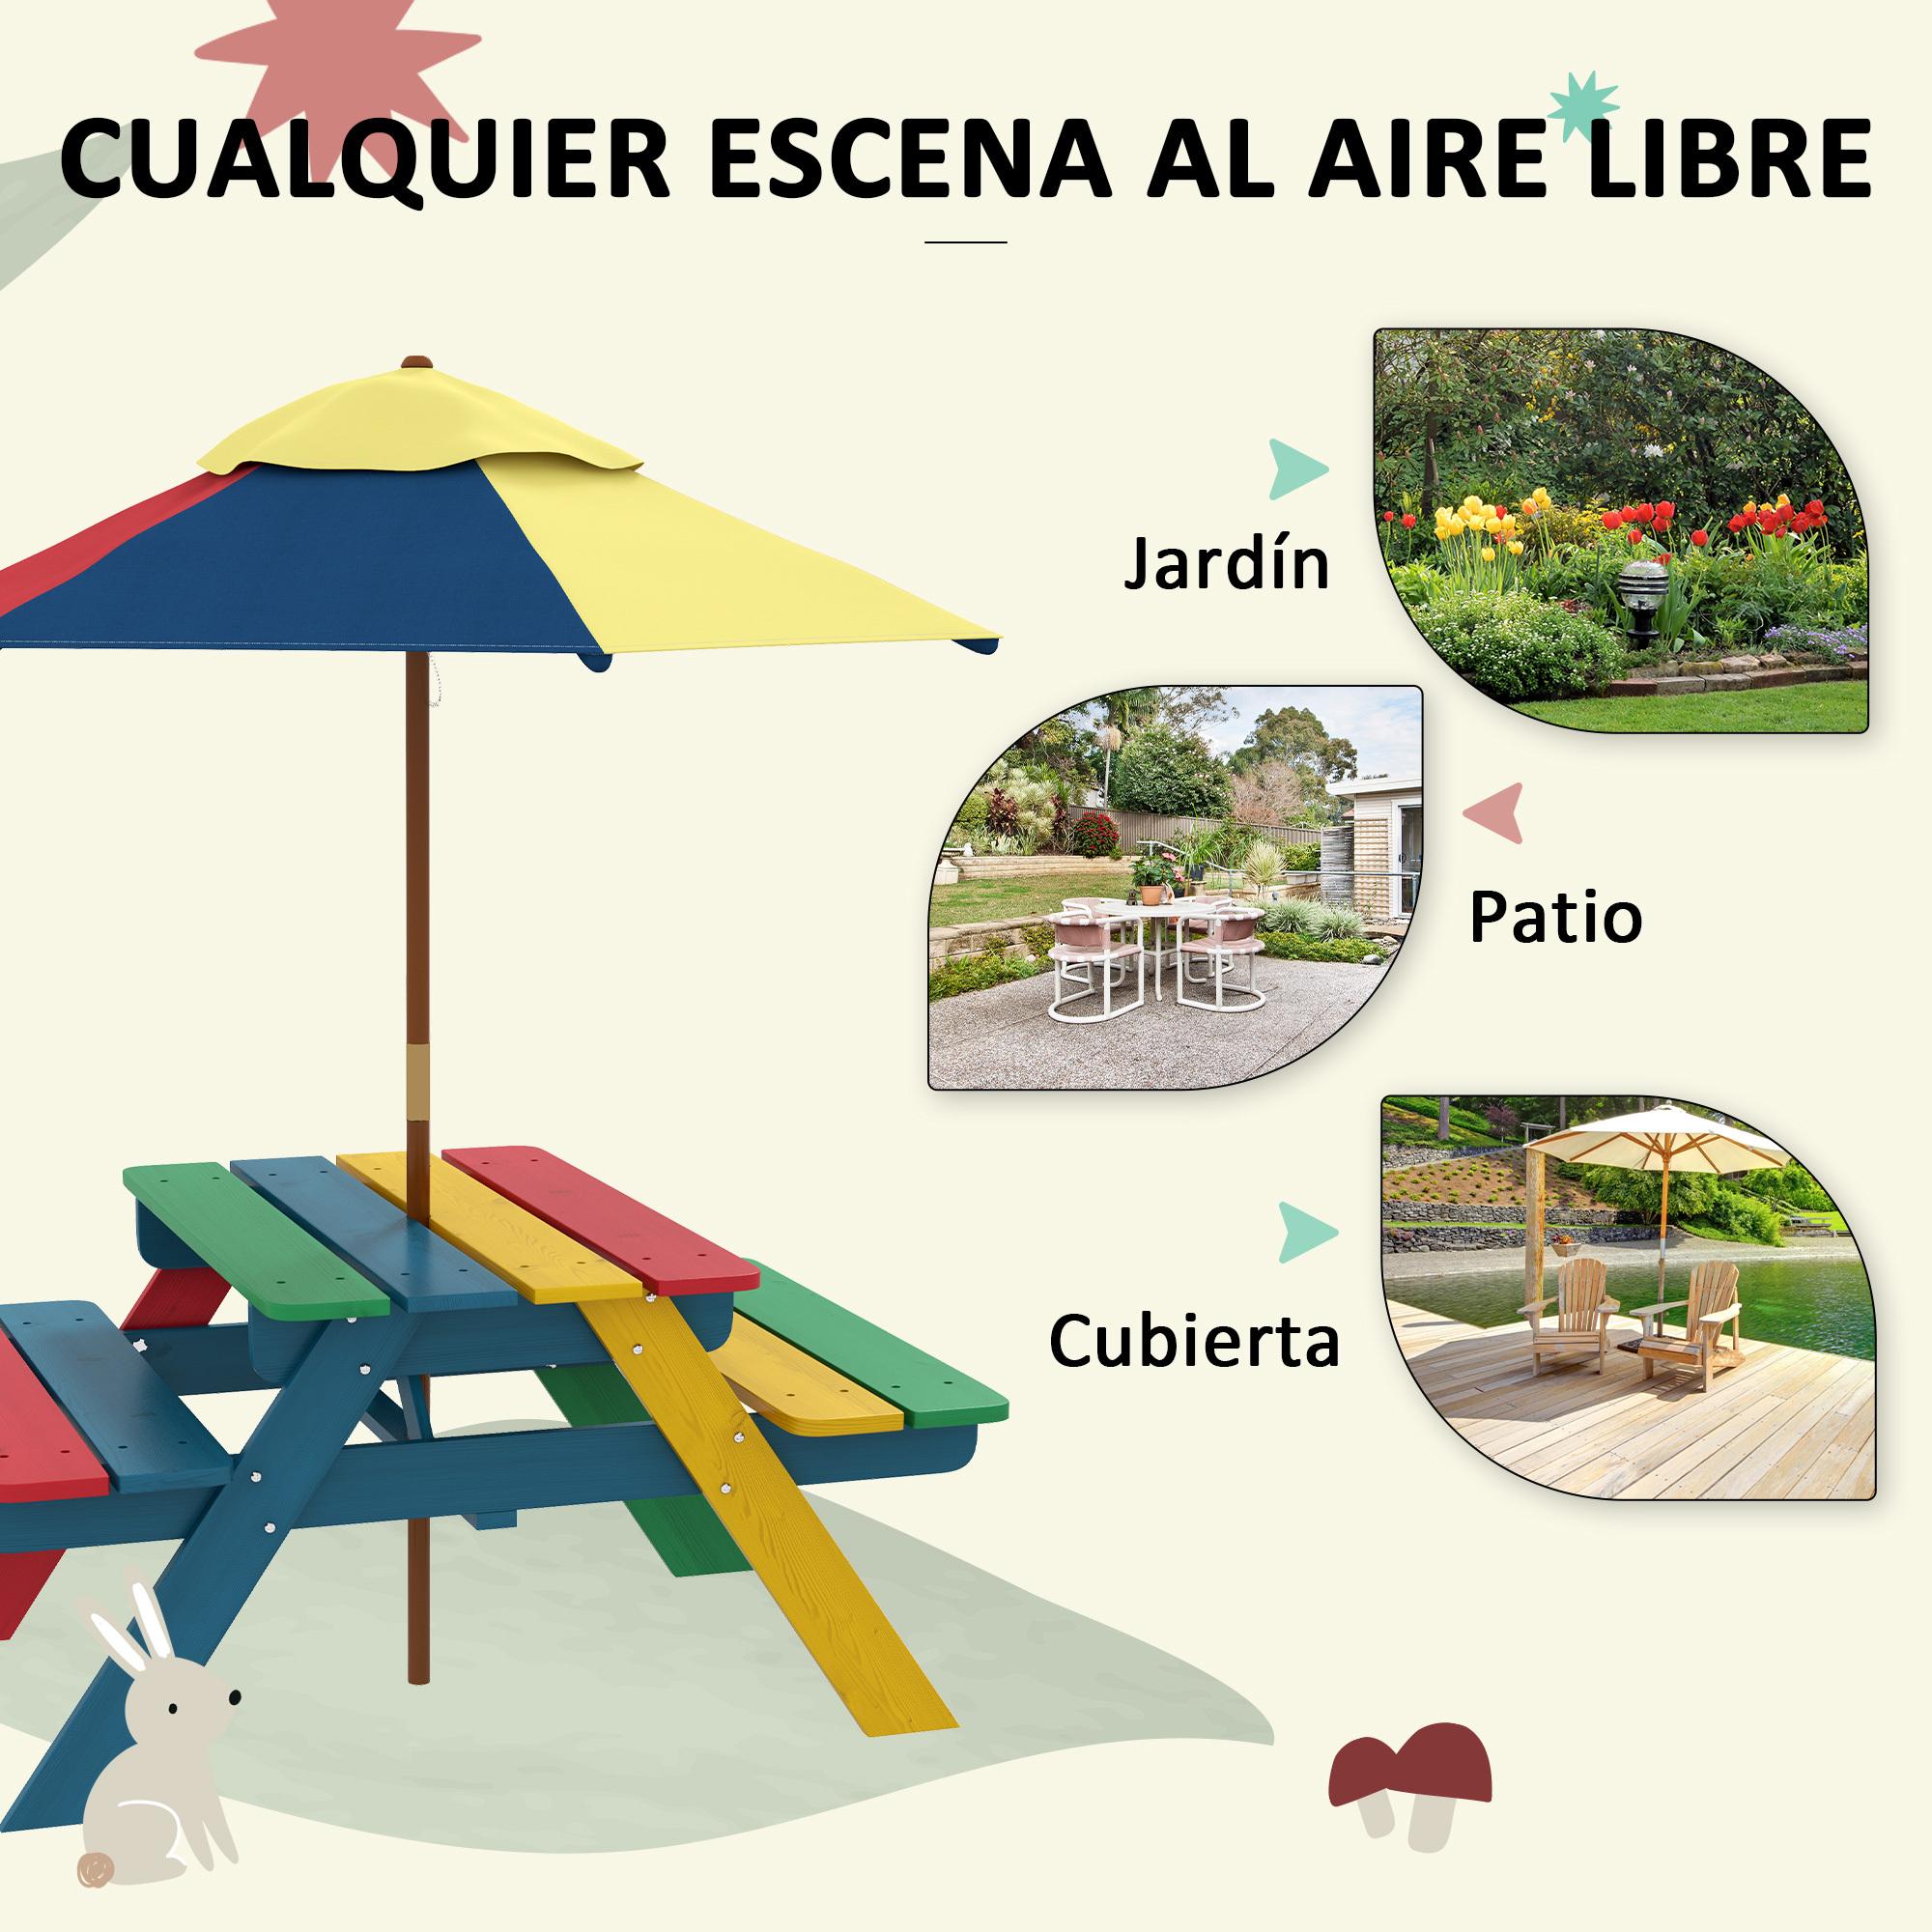 Mesa de Picnic para Niños de Madera Mesa y 2 Bancos Infantiles con Sombrilla Extraíble para Jardín Patio 85,5x75x142,5 cm Multicolor